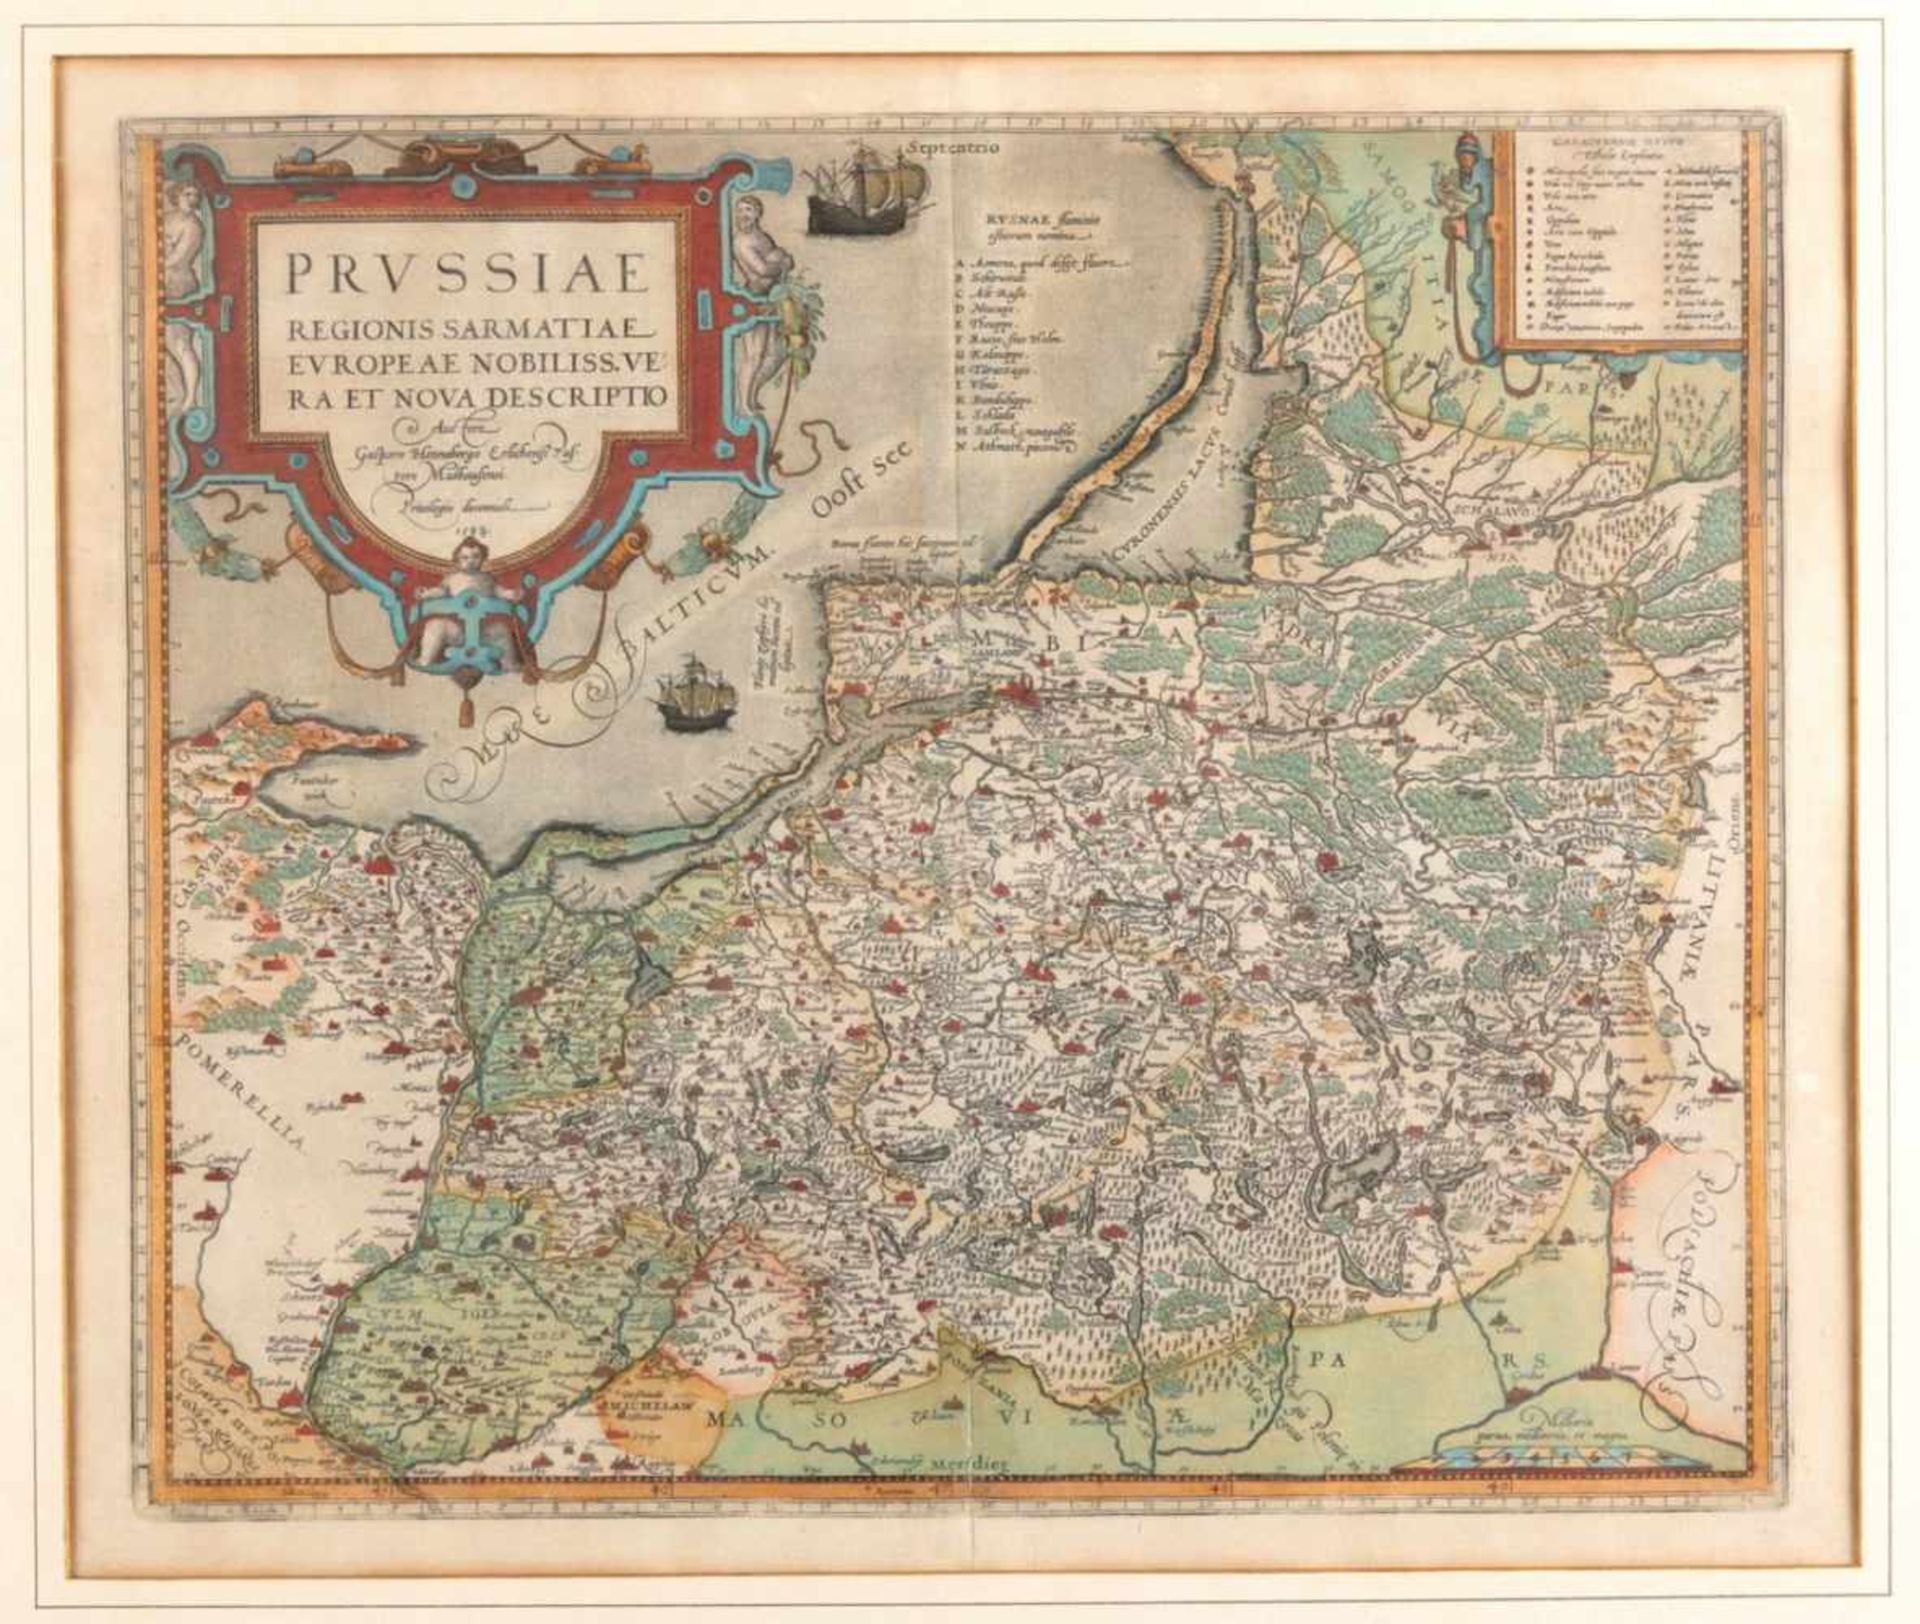 Ostpreußen - KarteAntwerpen, wohl 16./17.Jh. Prussiae regionis Sarmatiae Europeae nobiliss(imae)